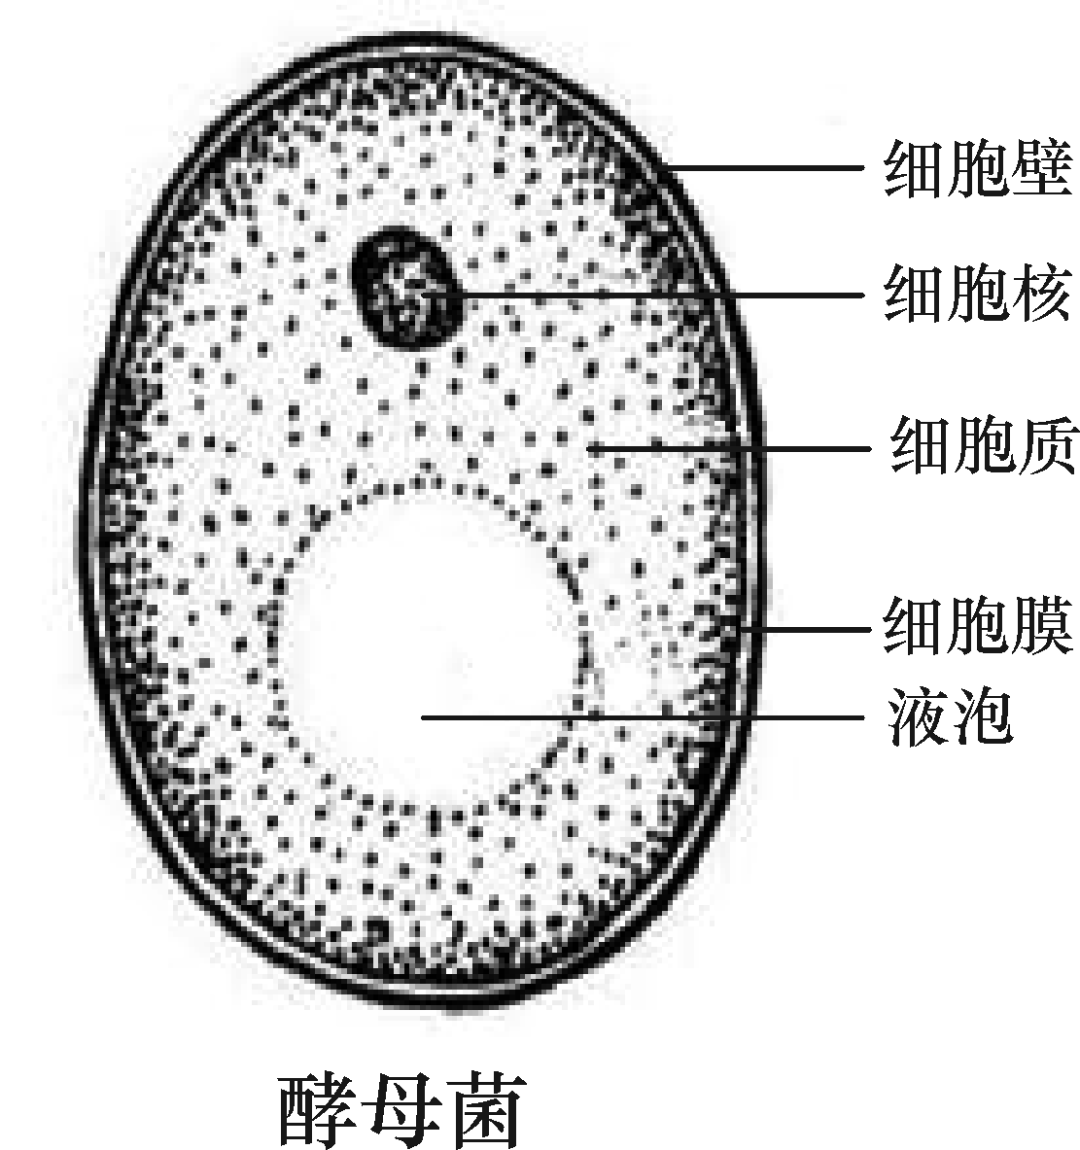 细菌,真菌和病毒的结构鸡卵的结构(2)女性生殖系统结构和功能(1)男性